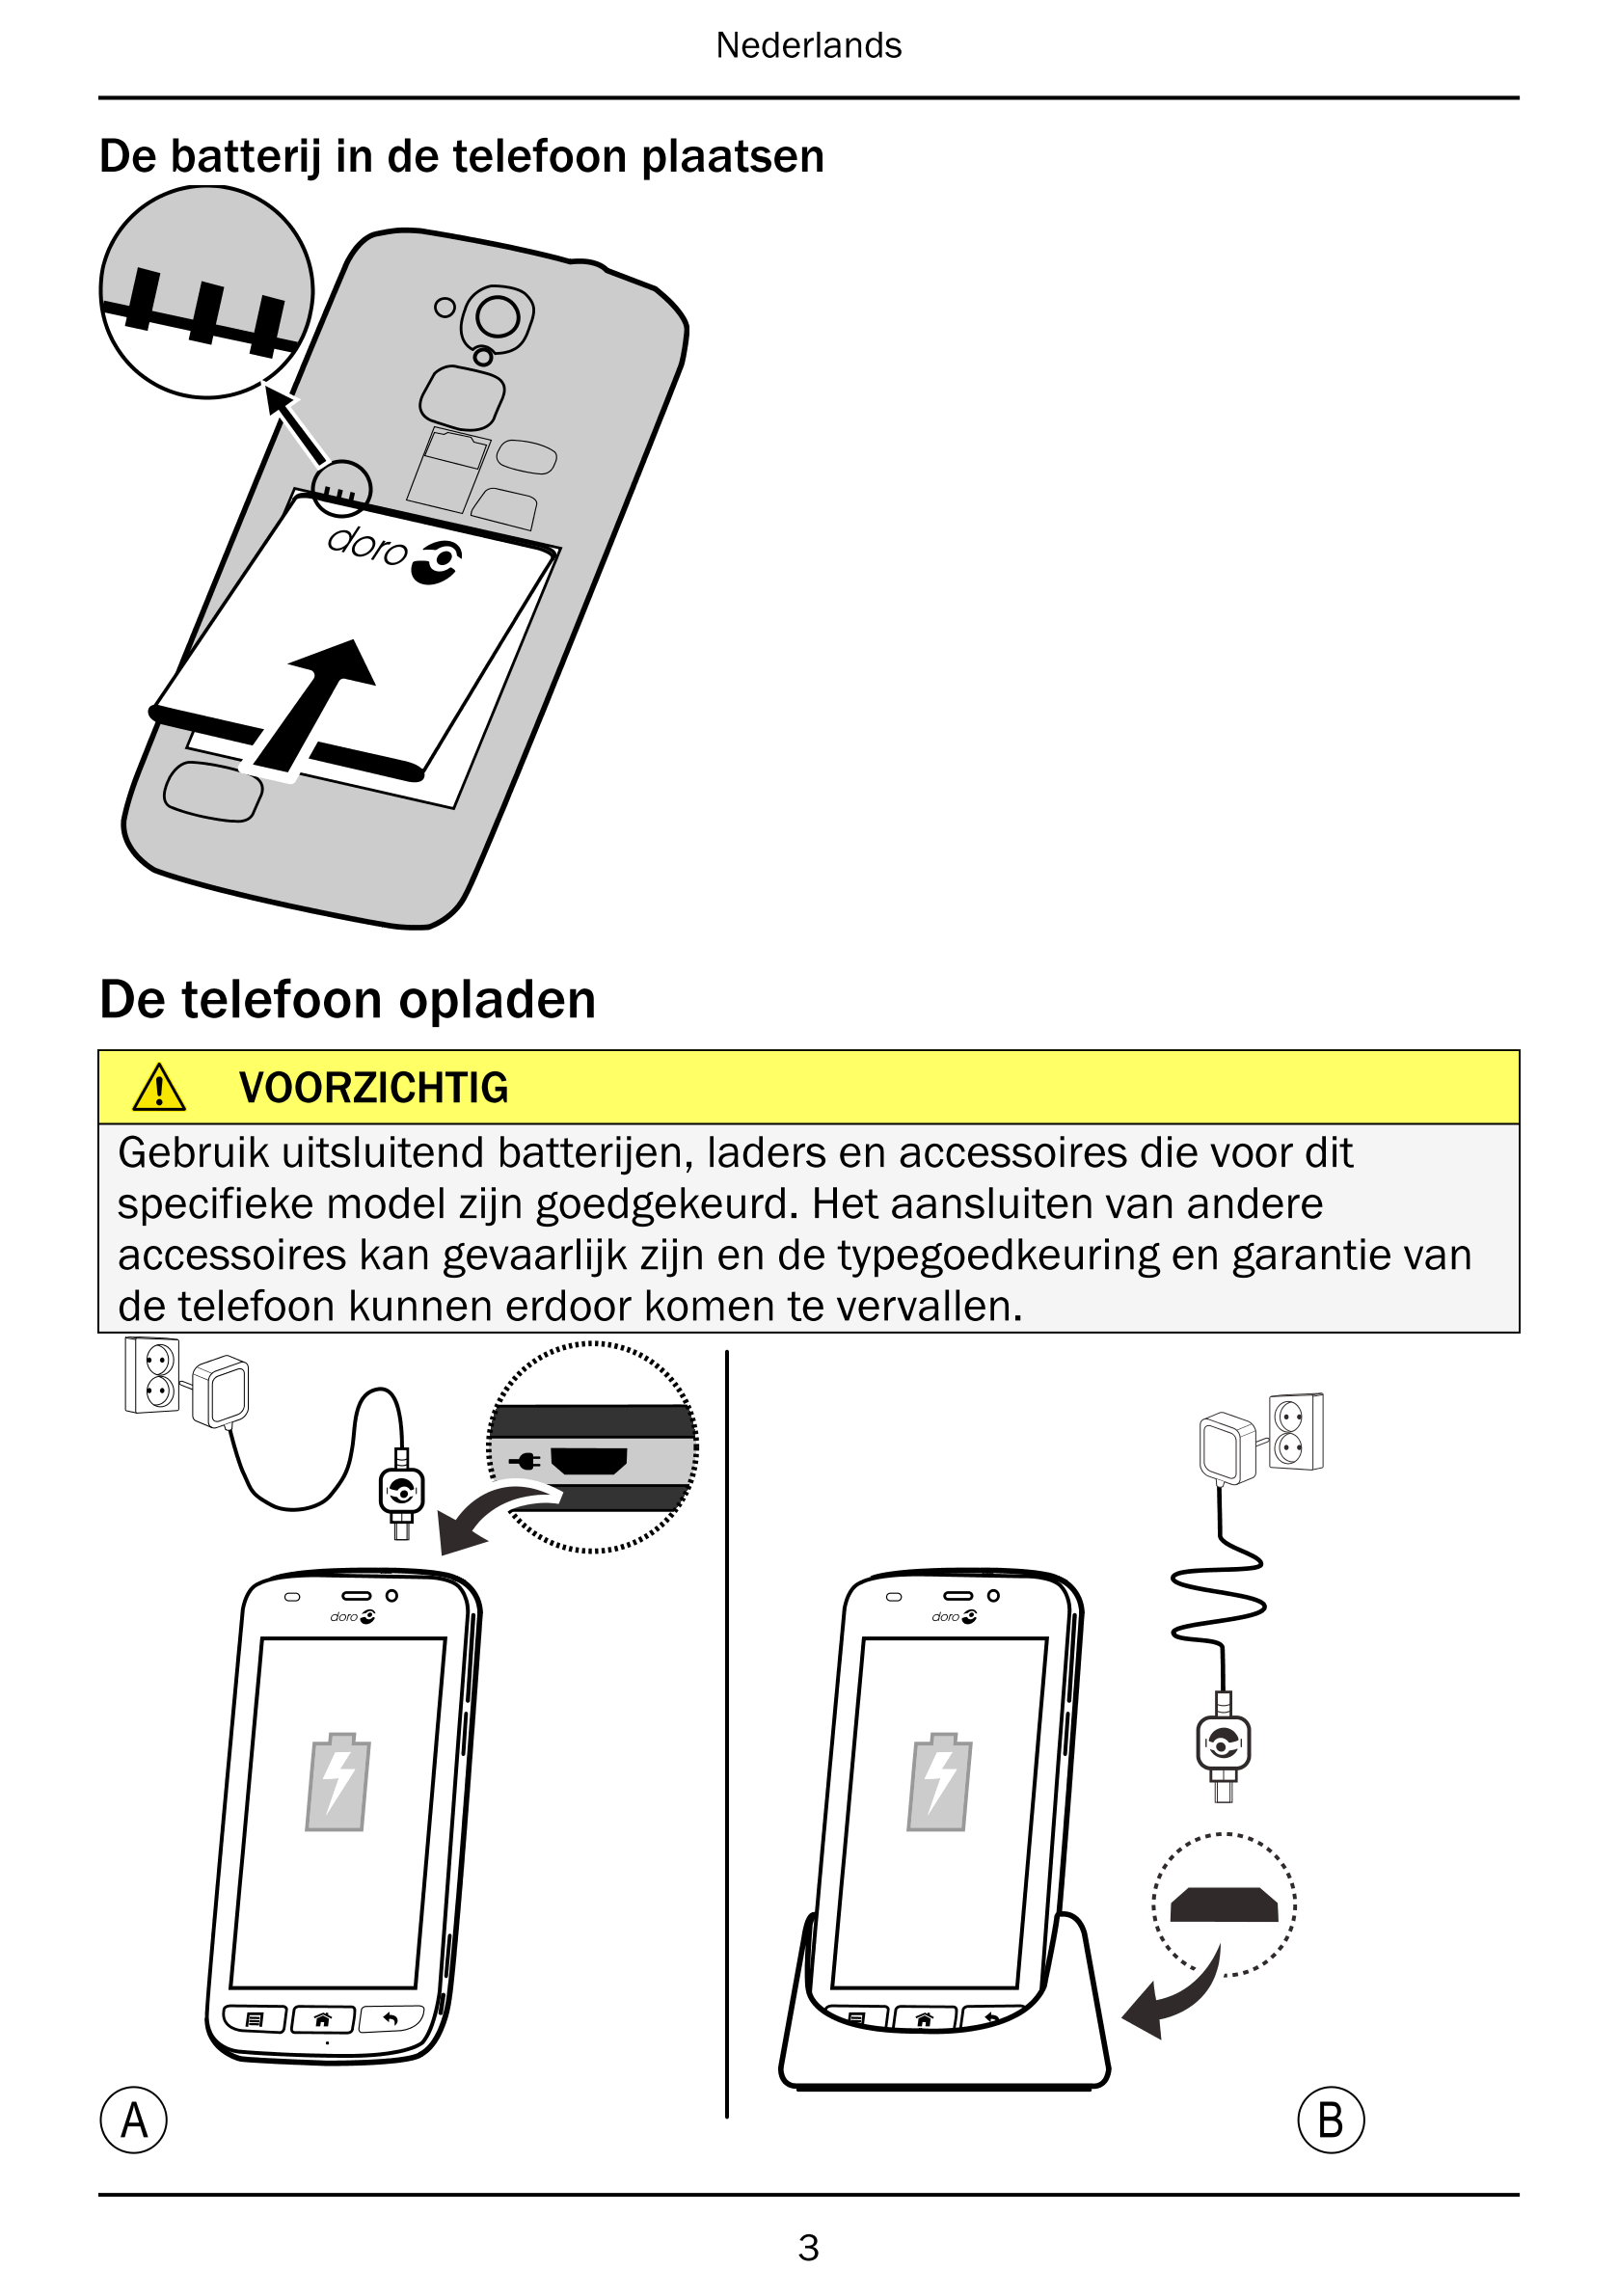 Nederlands
De batterij in de telefoon plaatsen
De telefoon opladen
VOORZICHTIG
Gebruik uitsluitend batterijen, laders en accesso